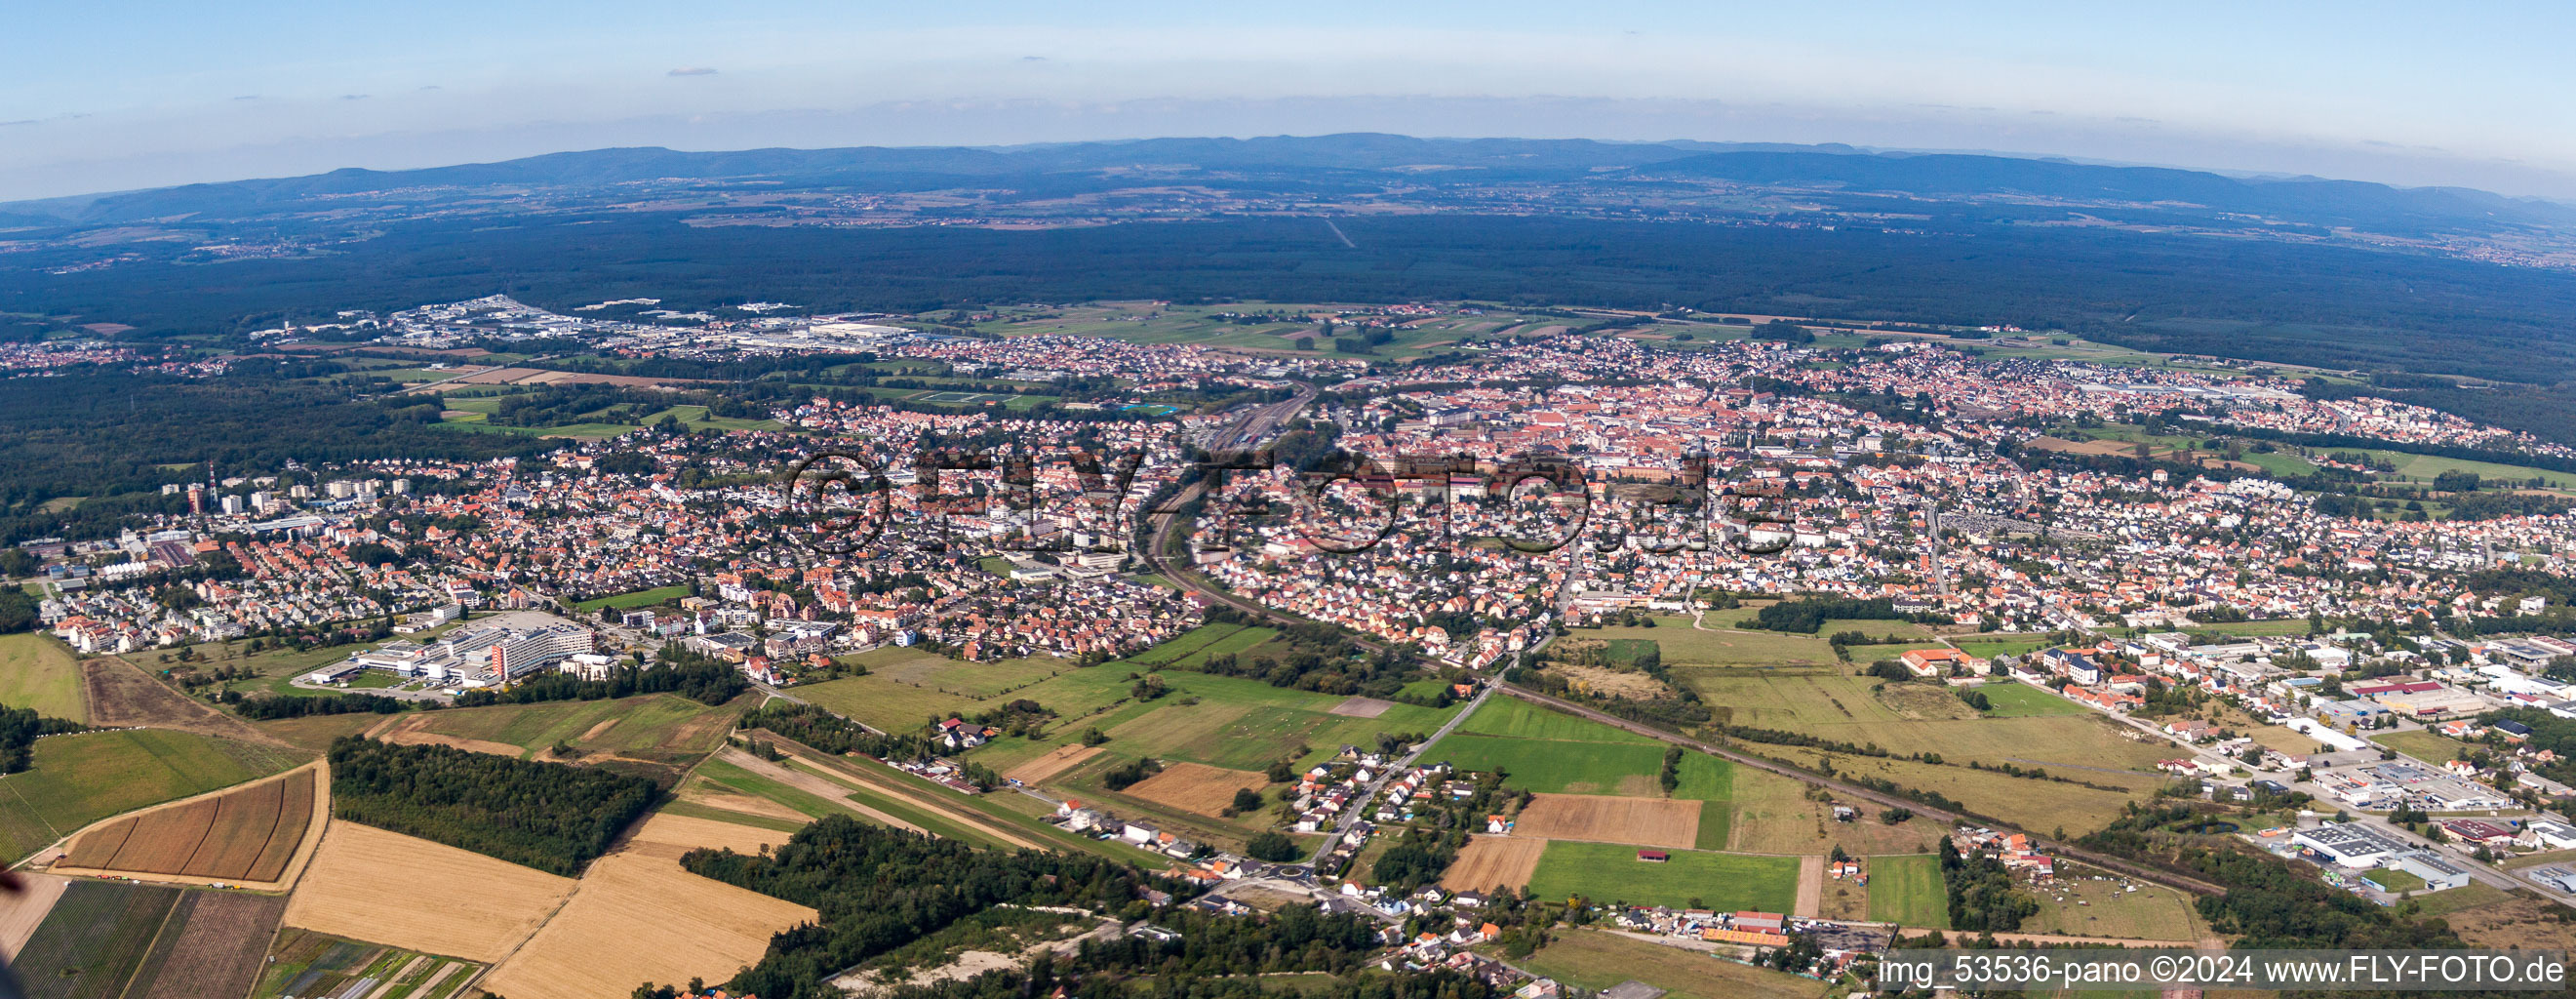 Panorama - Perspektive Ortsansicht der Straßen und Häuser der Wohngebiete in Haguenau in Grand Est in Hagenau im Bundesland Bas-Rhin, Frankreich